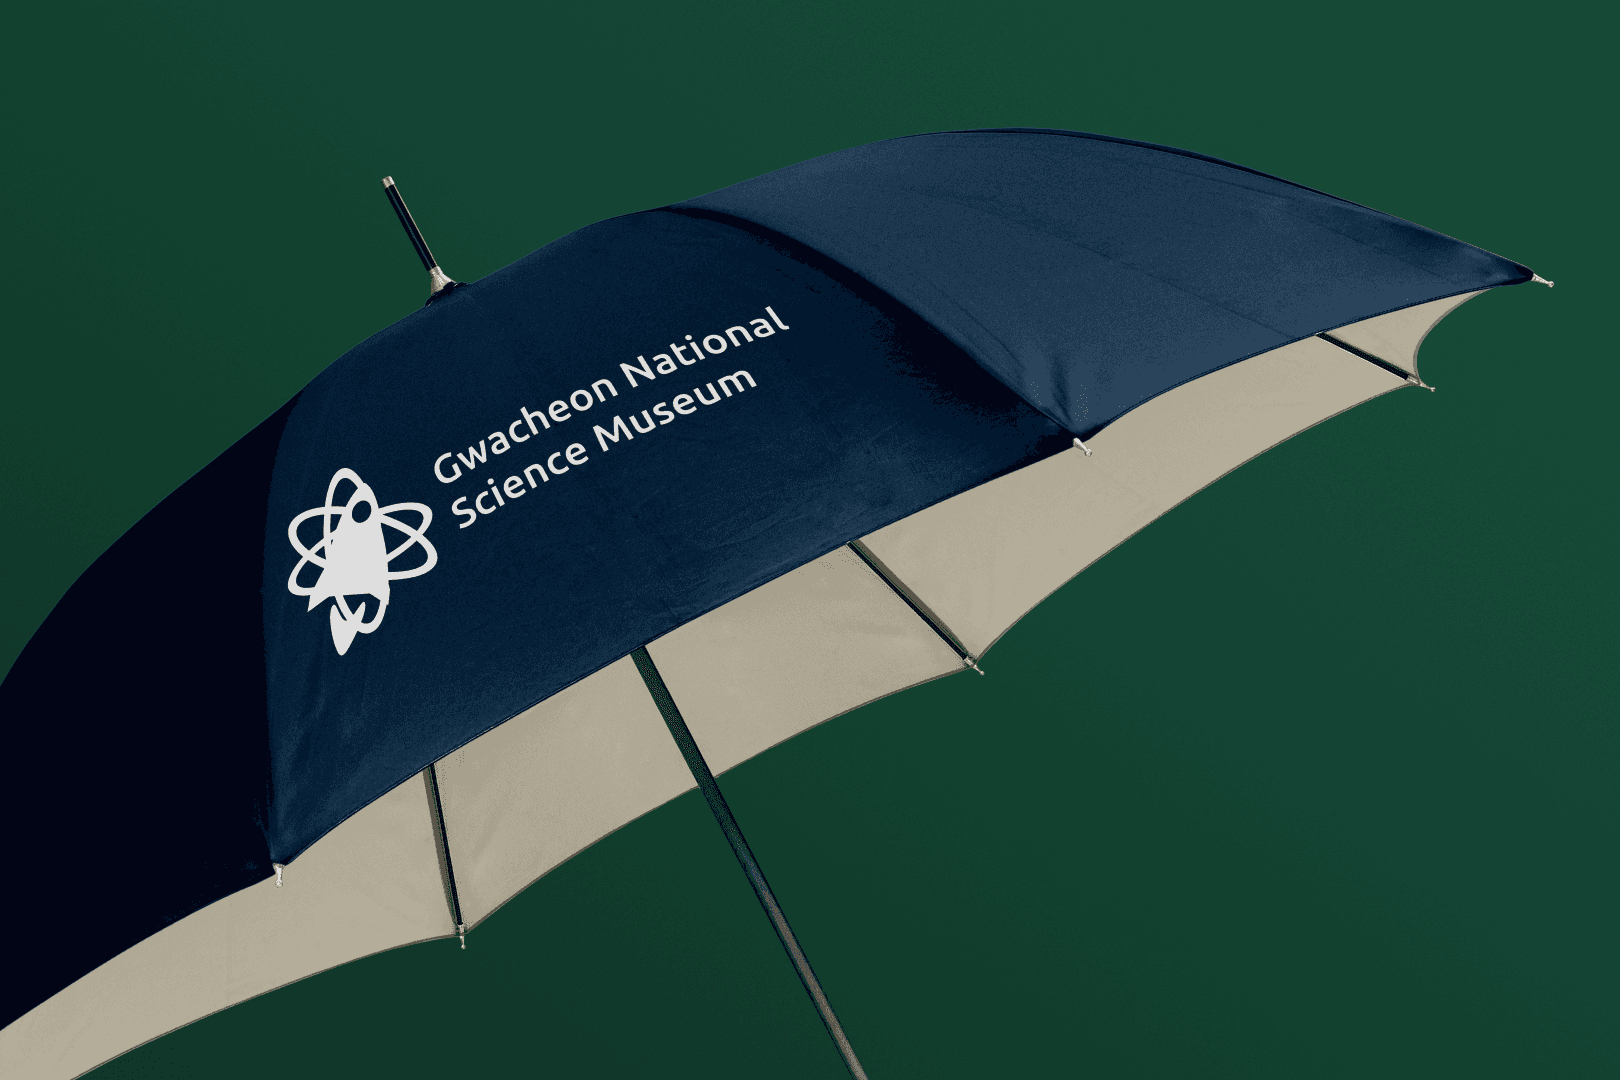 Image of umbrellas